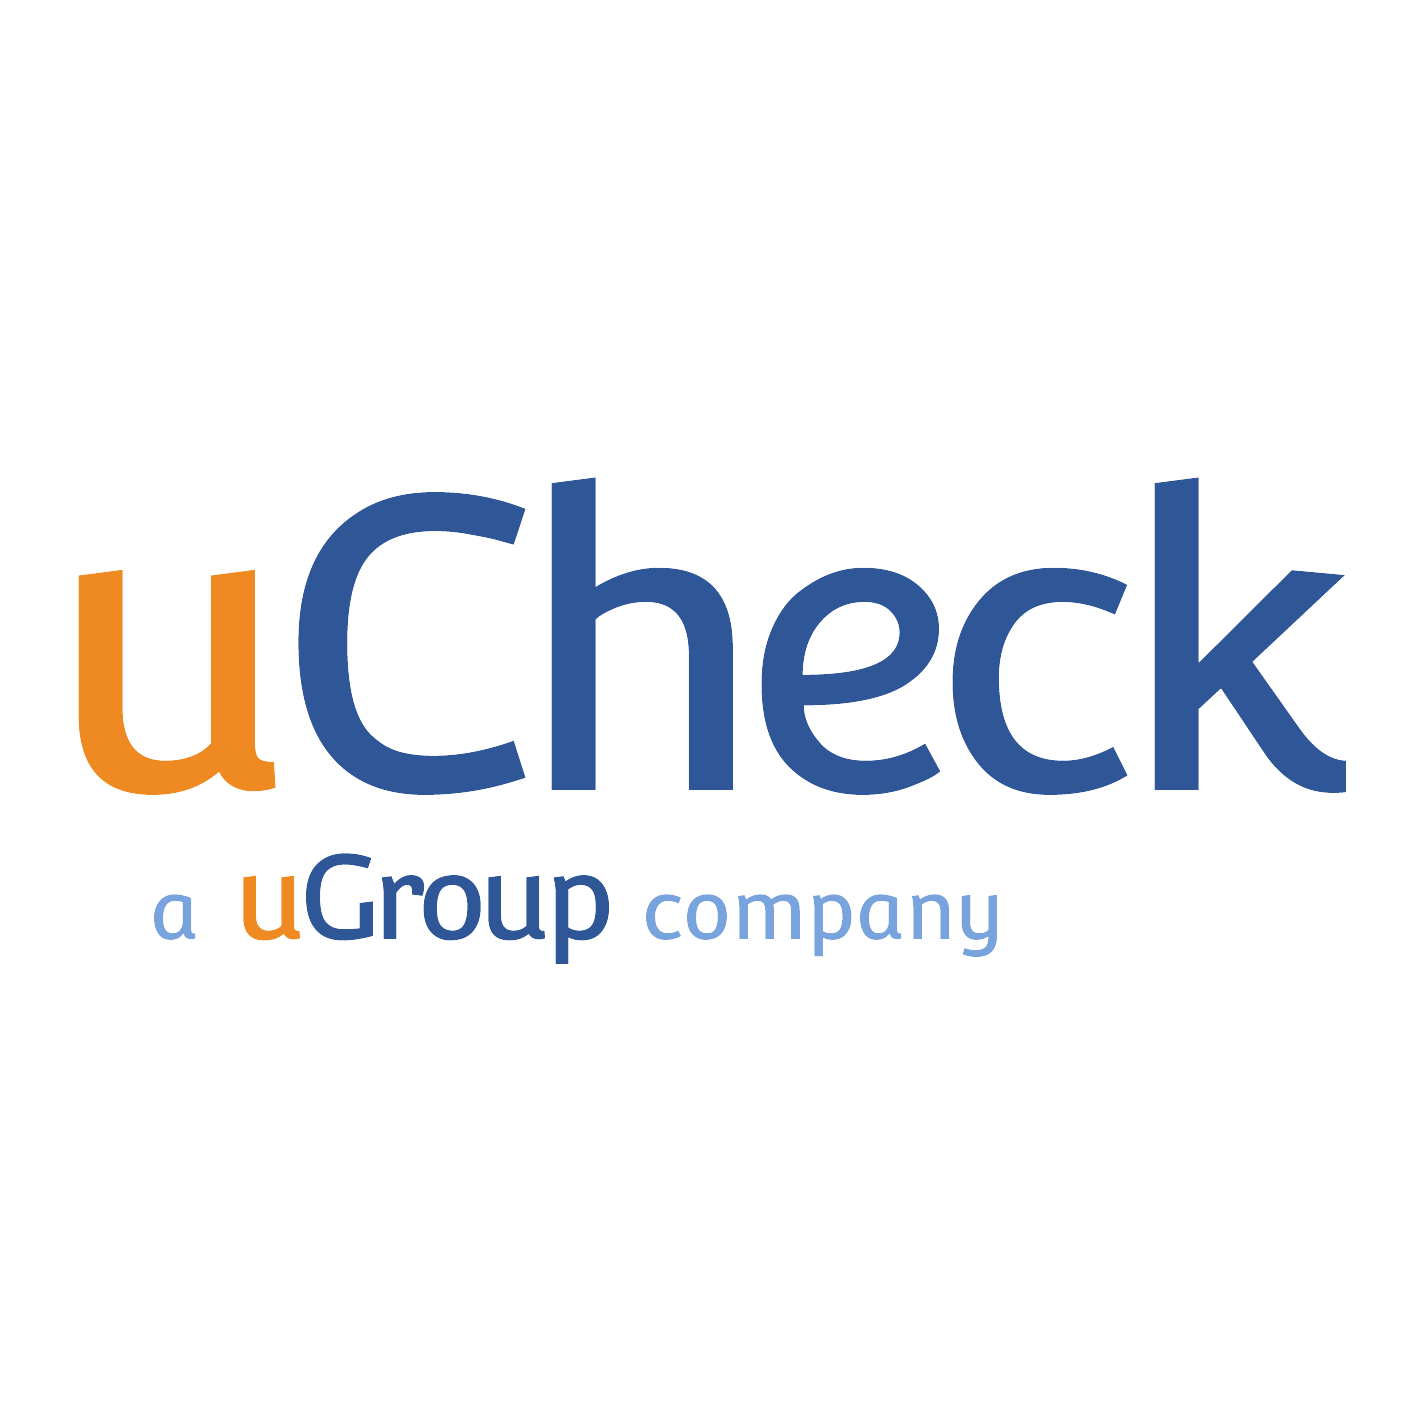 ucheck logo